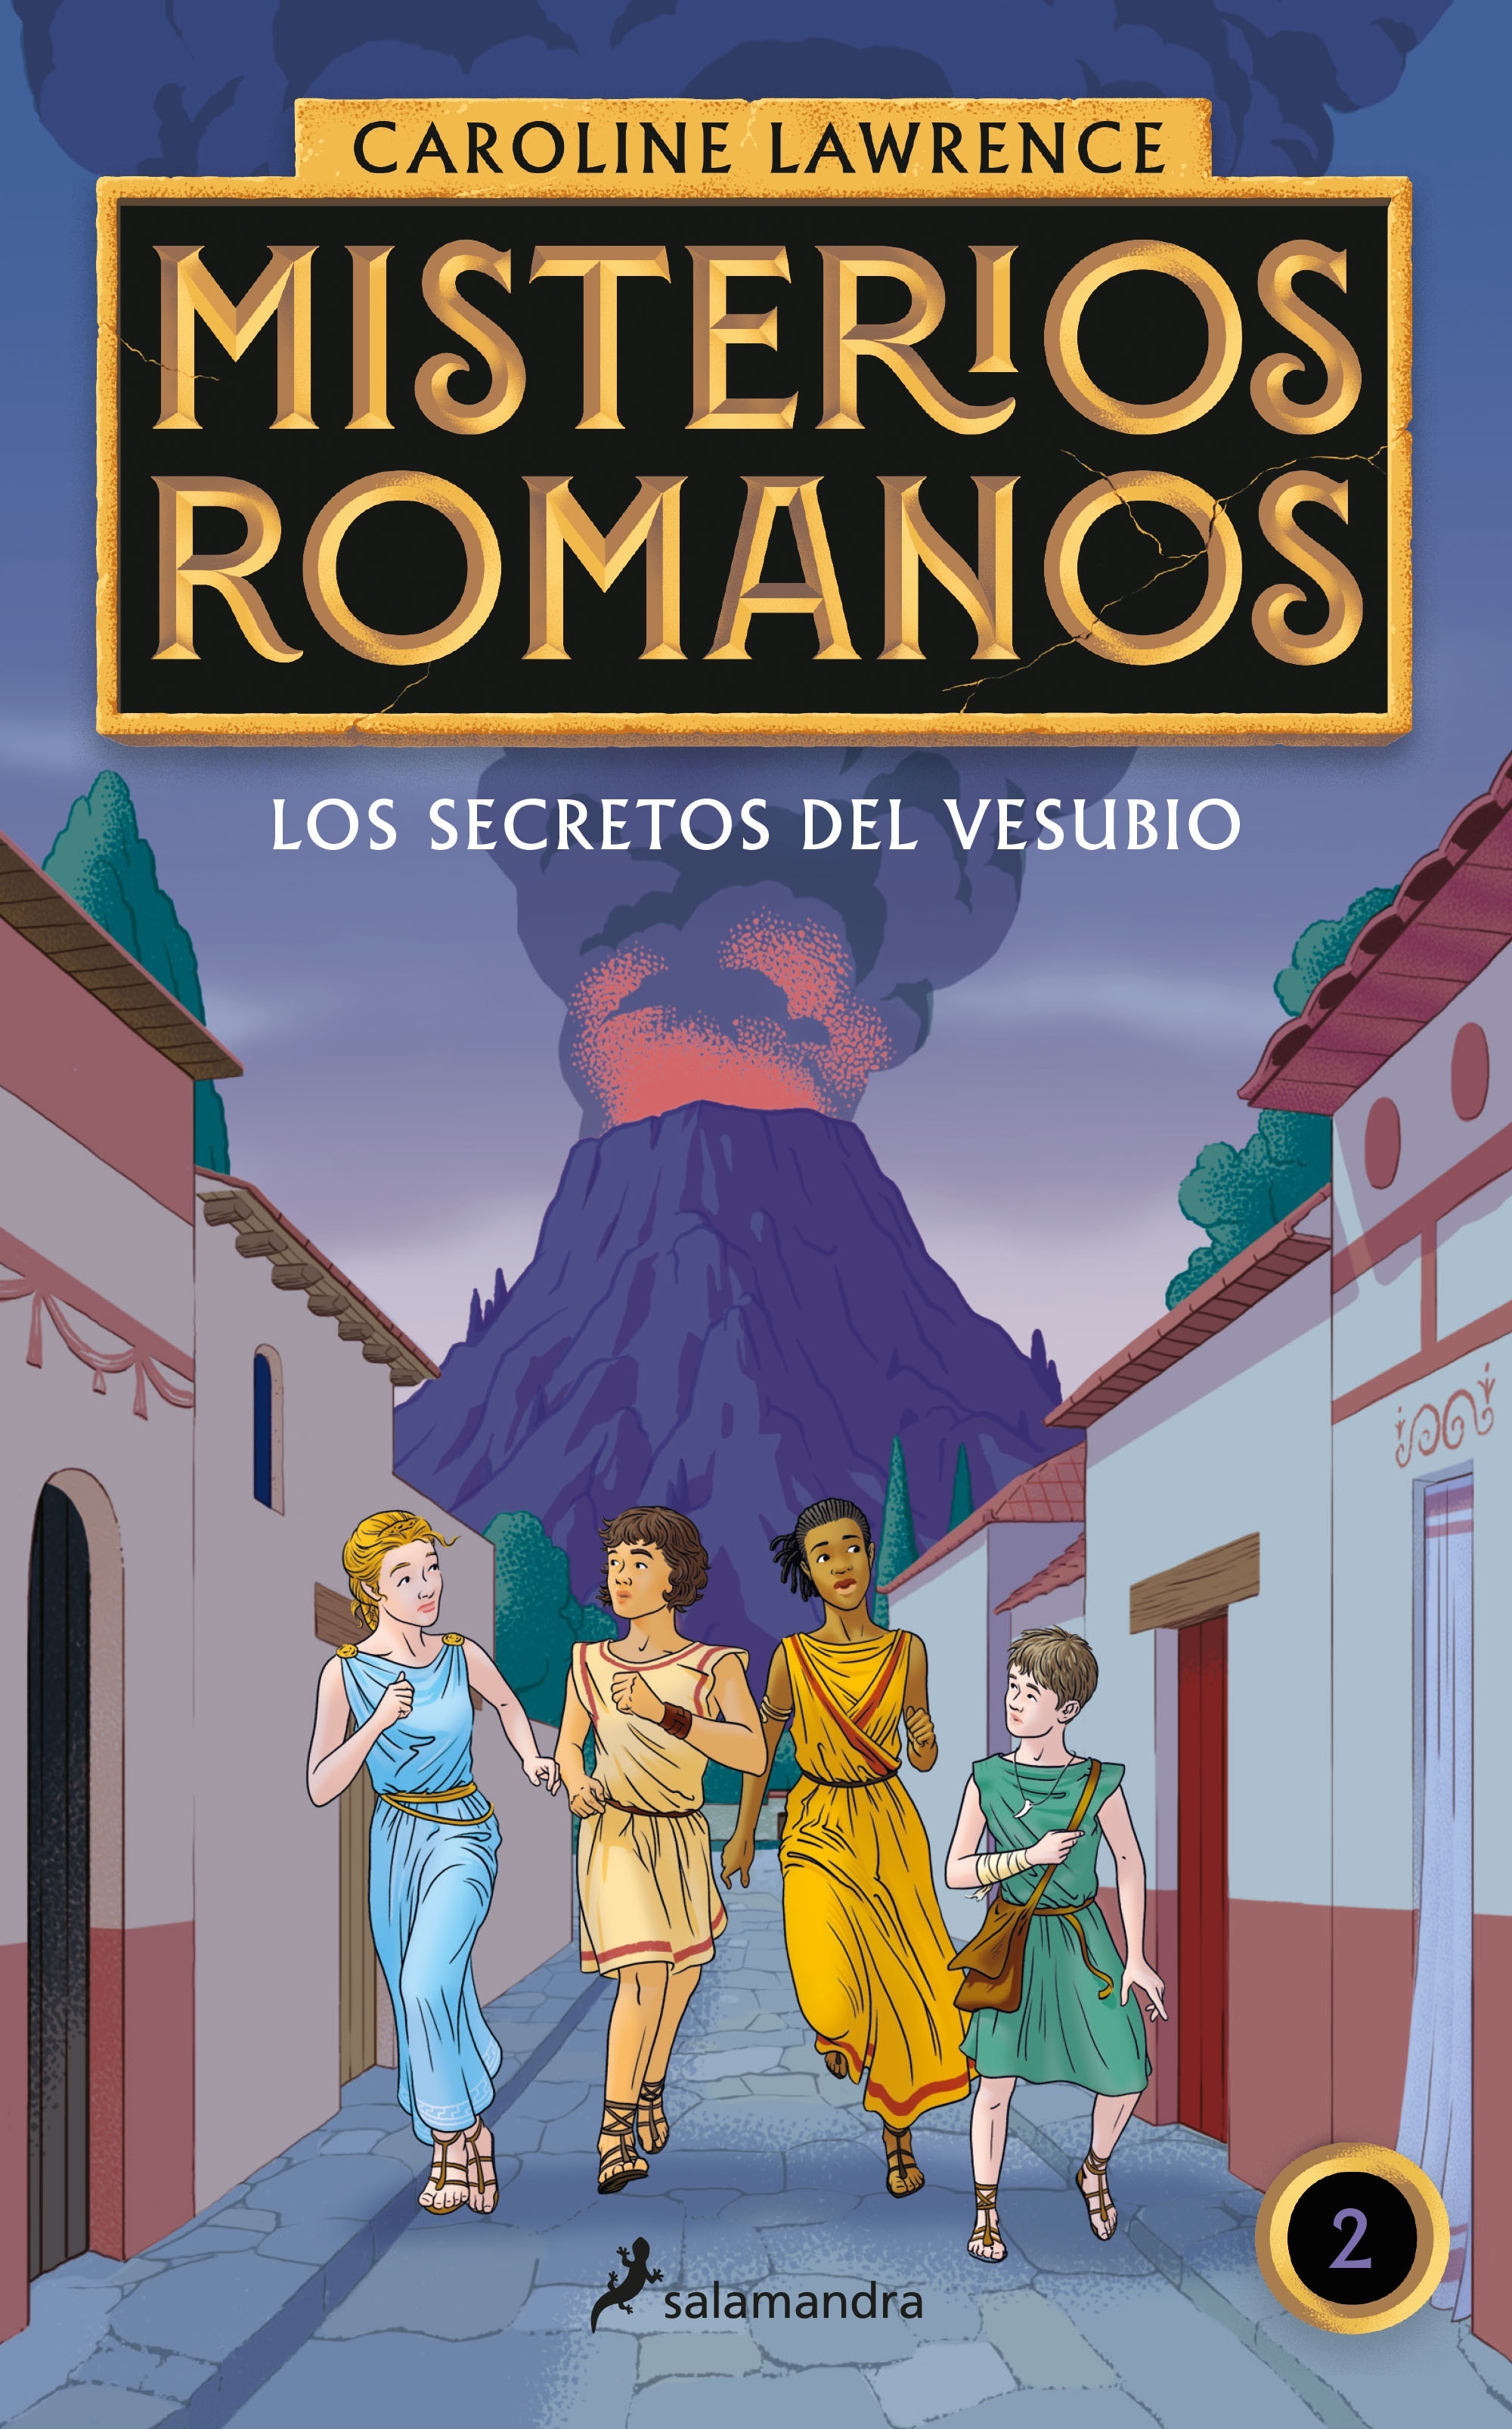 Secretos del Vesubio, Los "Misterios romanos II"